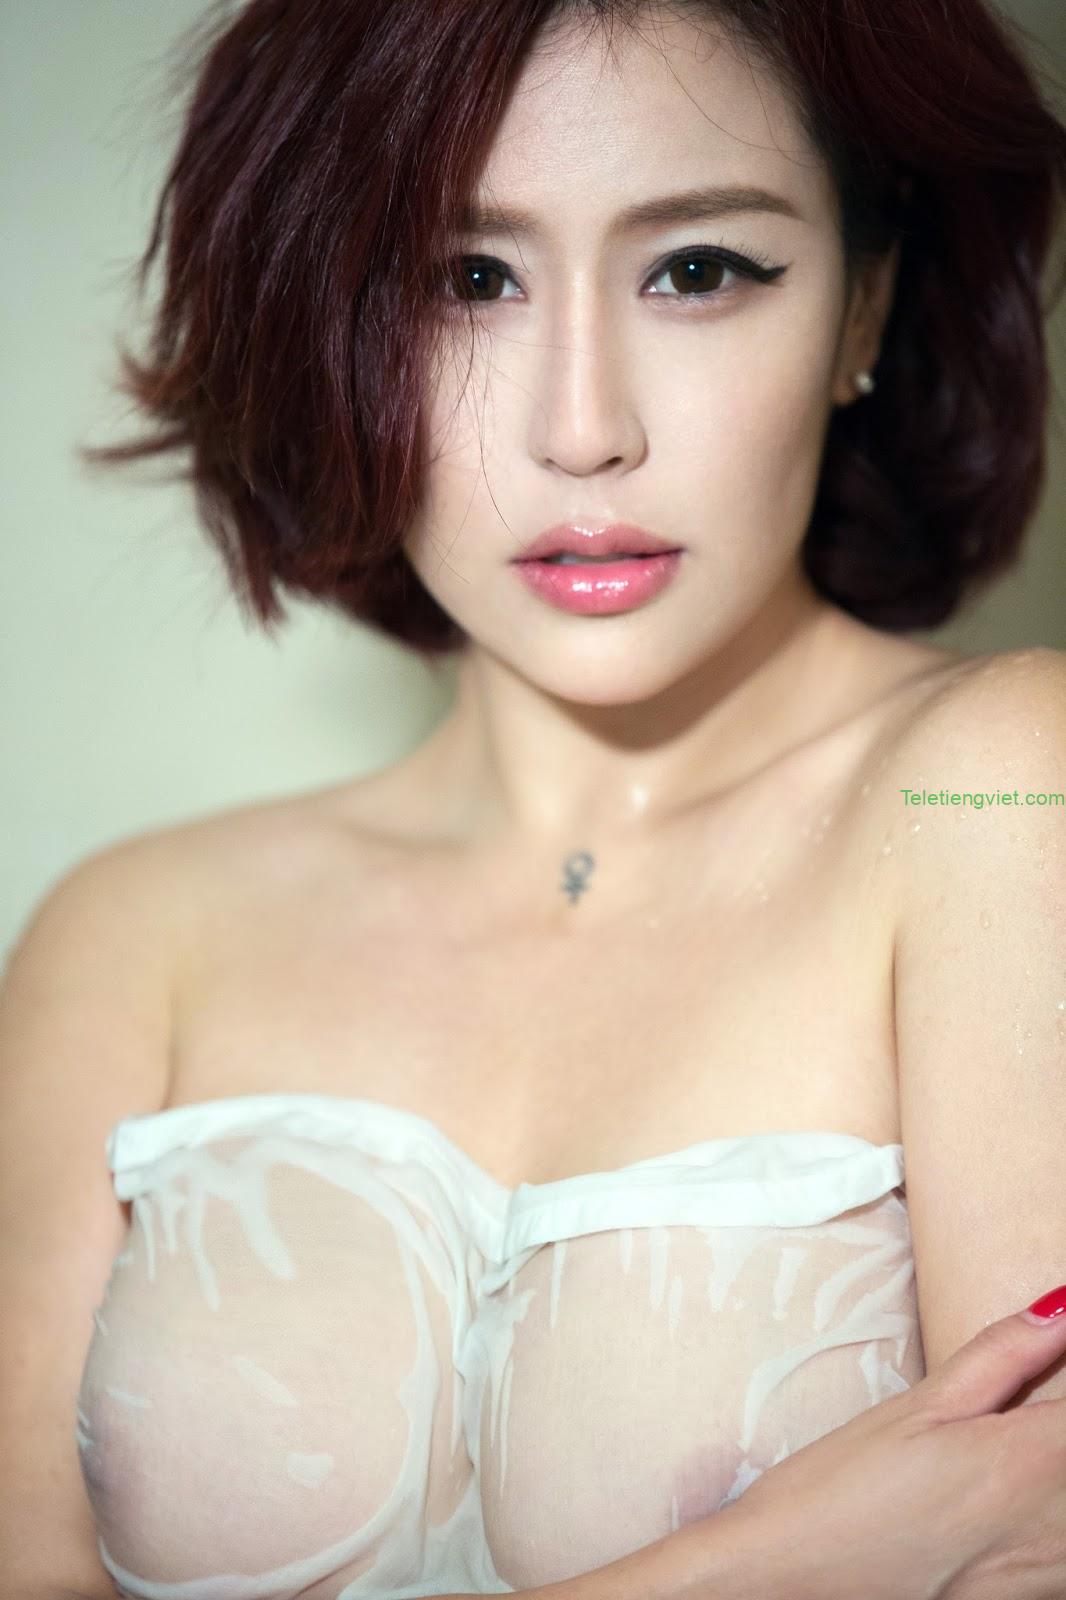 Hình ảnh gái xinh nude Việt Nam đẹp nóng bỏng gợi cảm